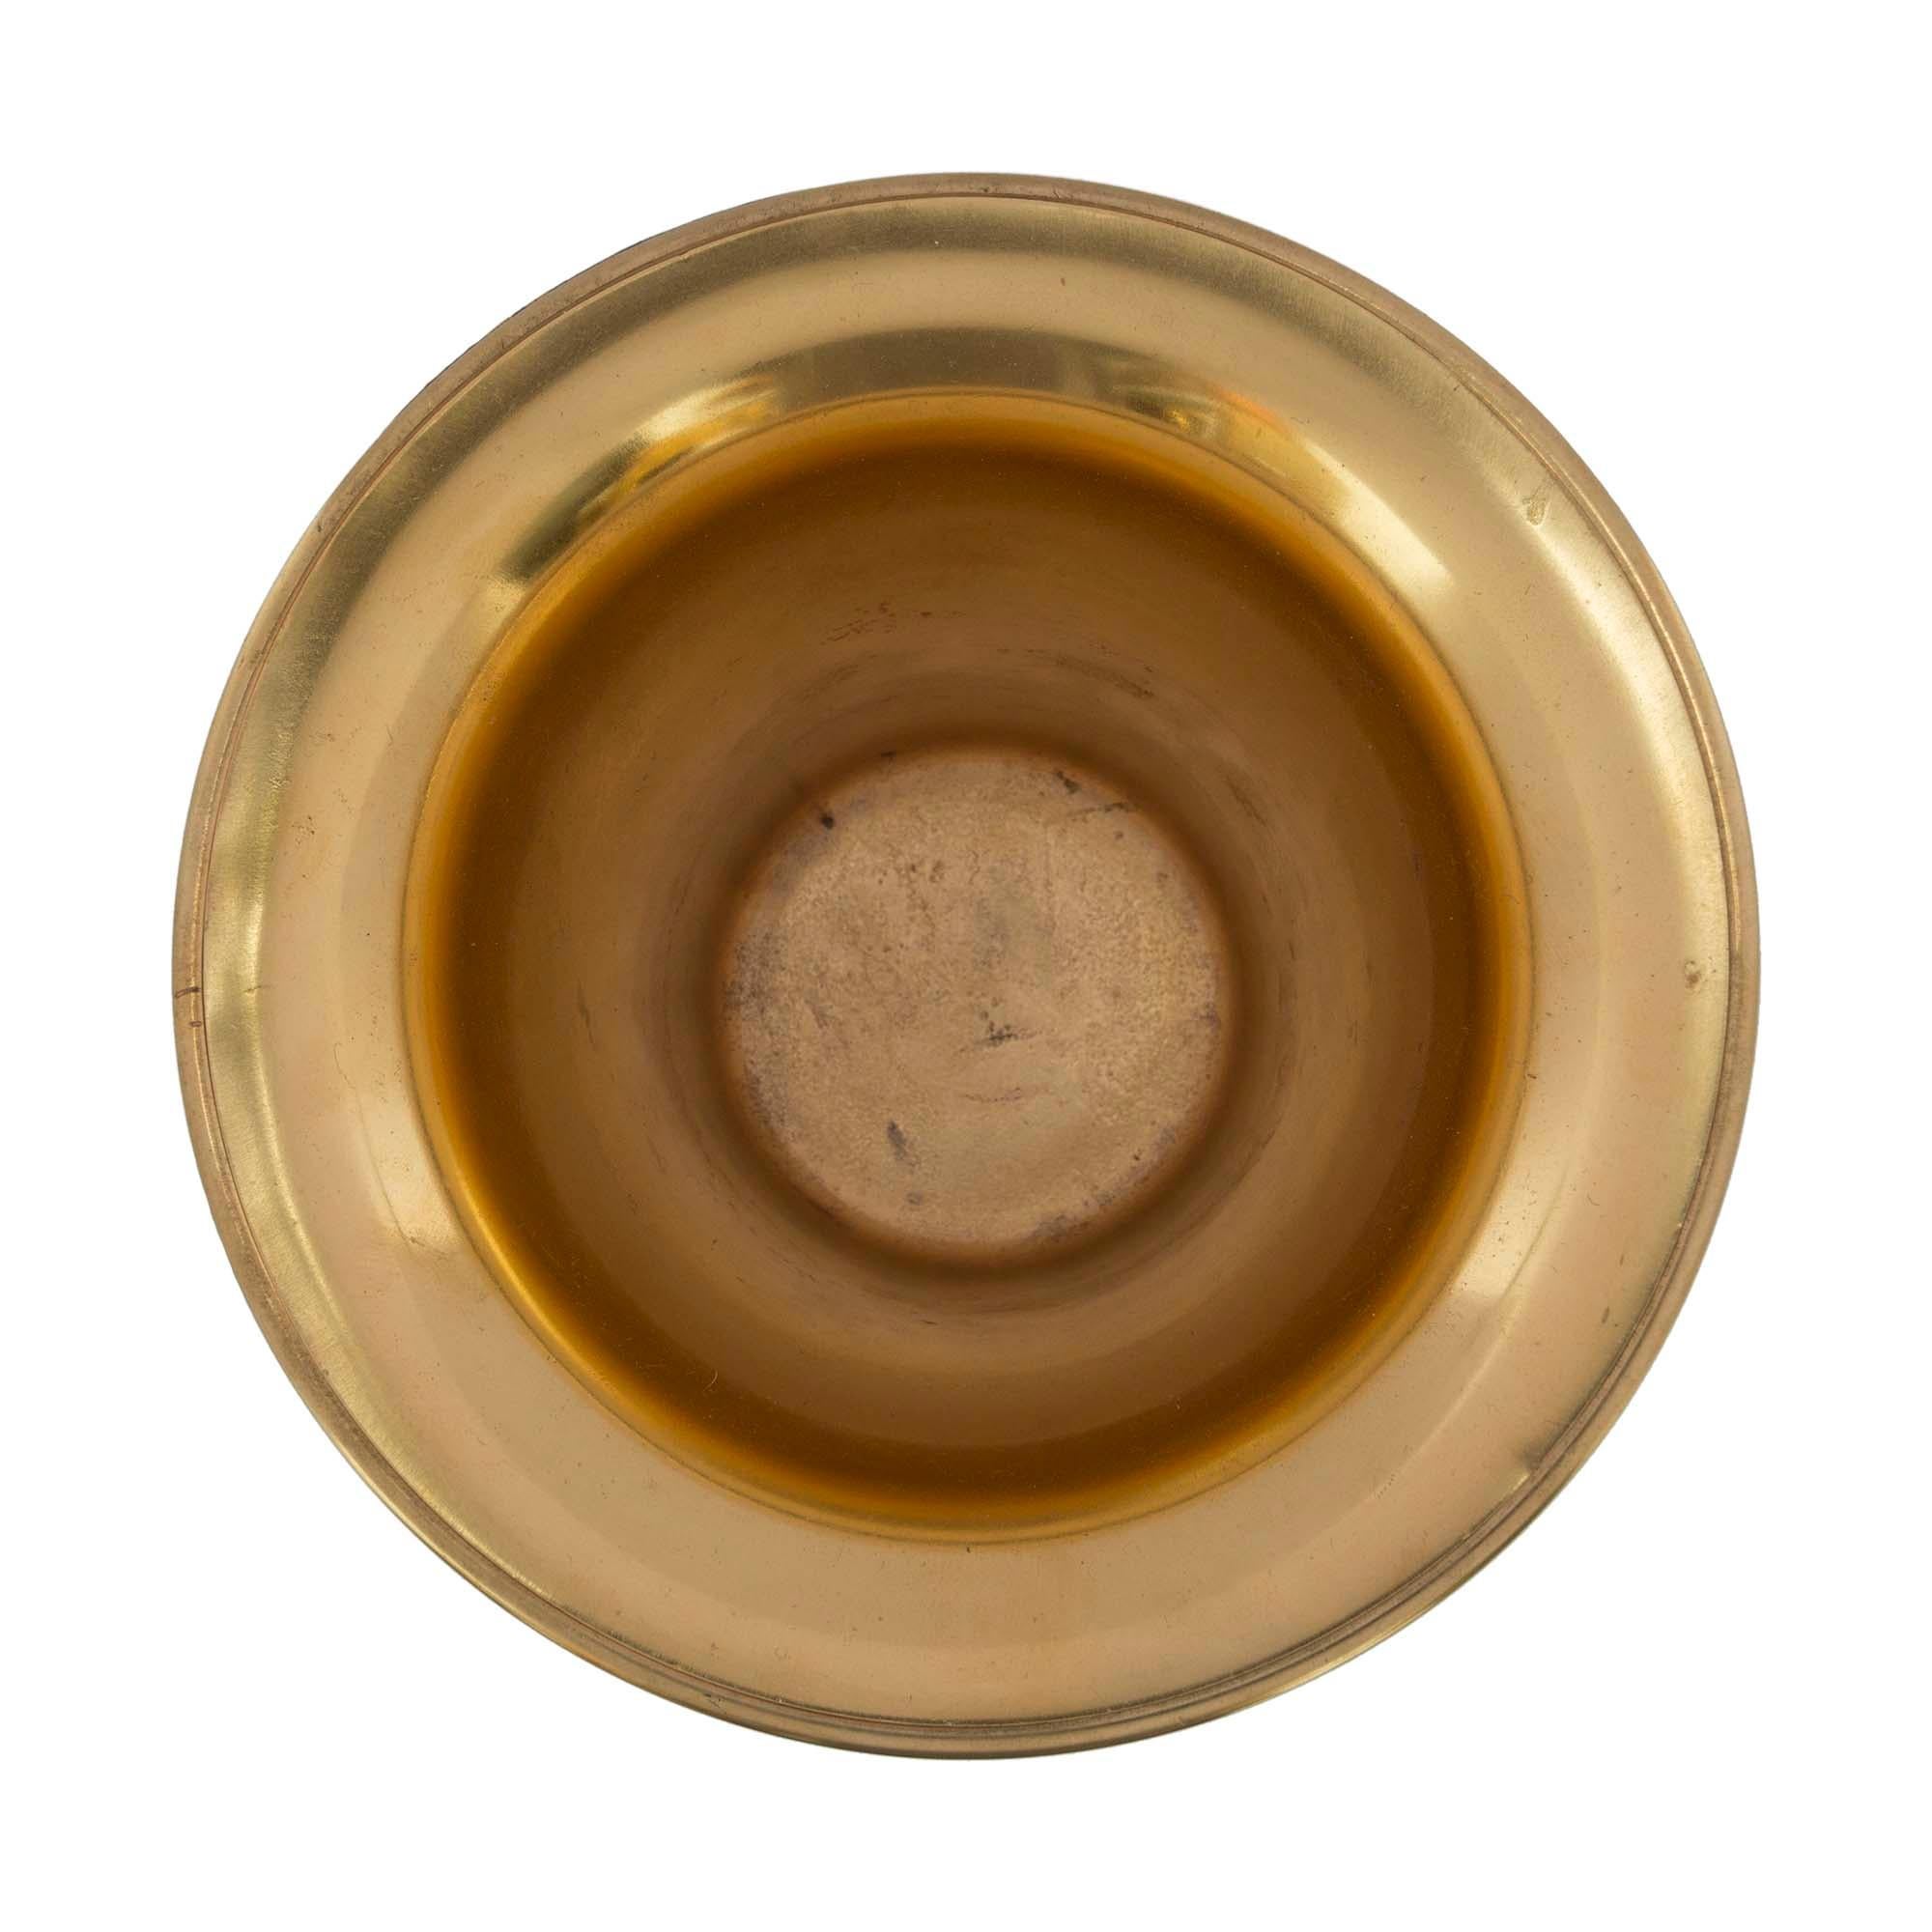 Une sensationnelle urne en bronze patiné et bronze doré de très haute qualité, attribuée à Henry Dasson, de style néo-classique français du 19e siècle. L'urne est surélevée par trois supports en forme de 